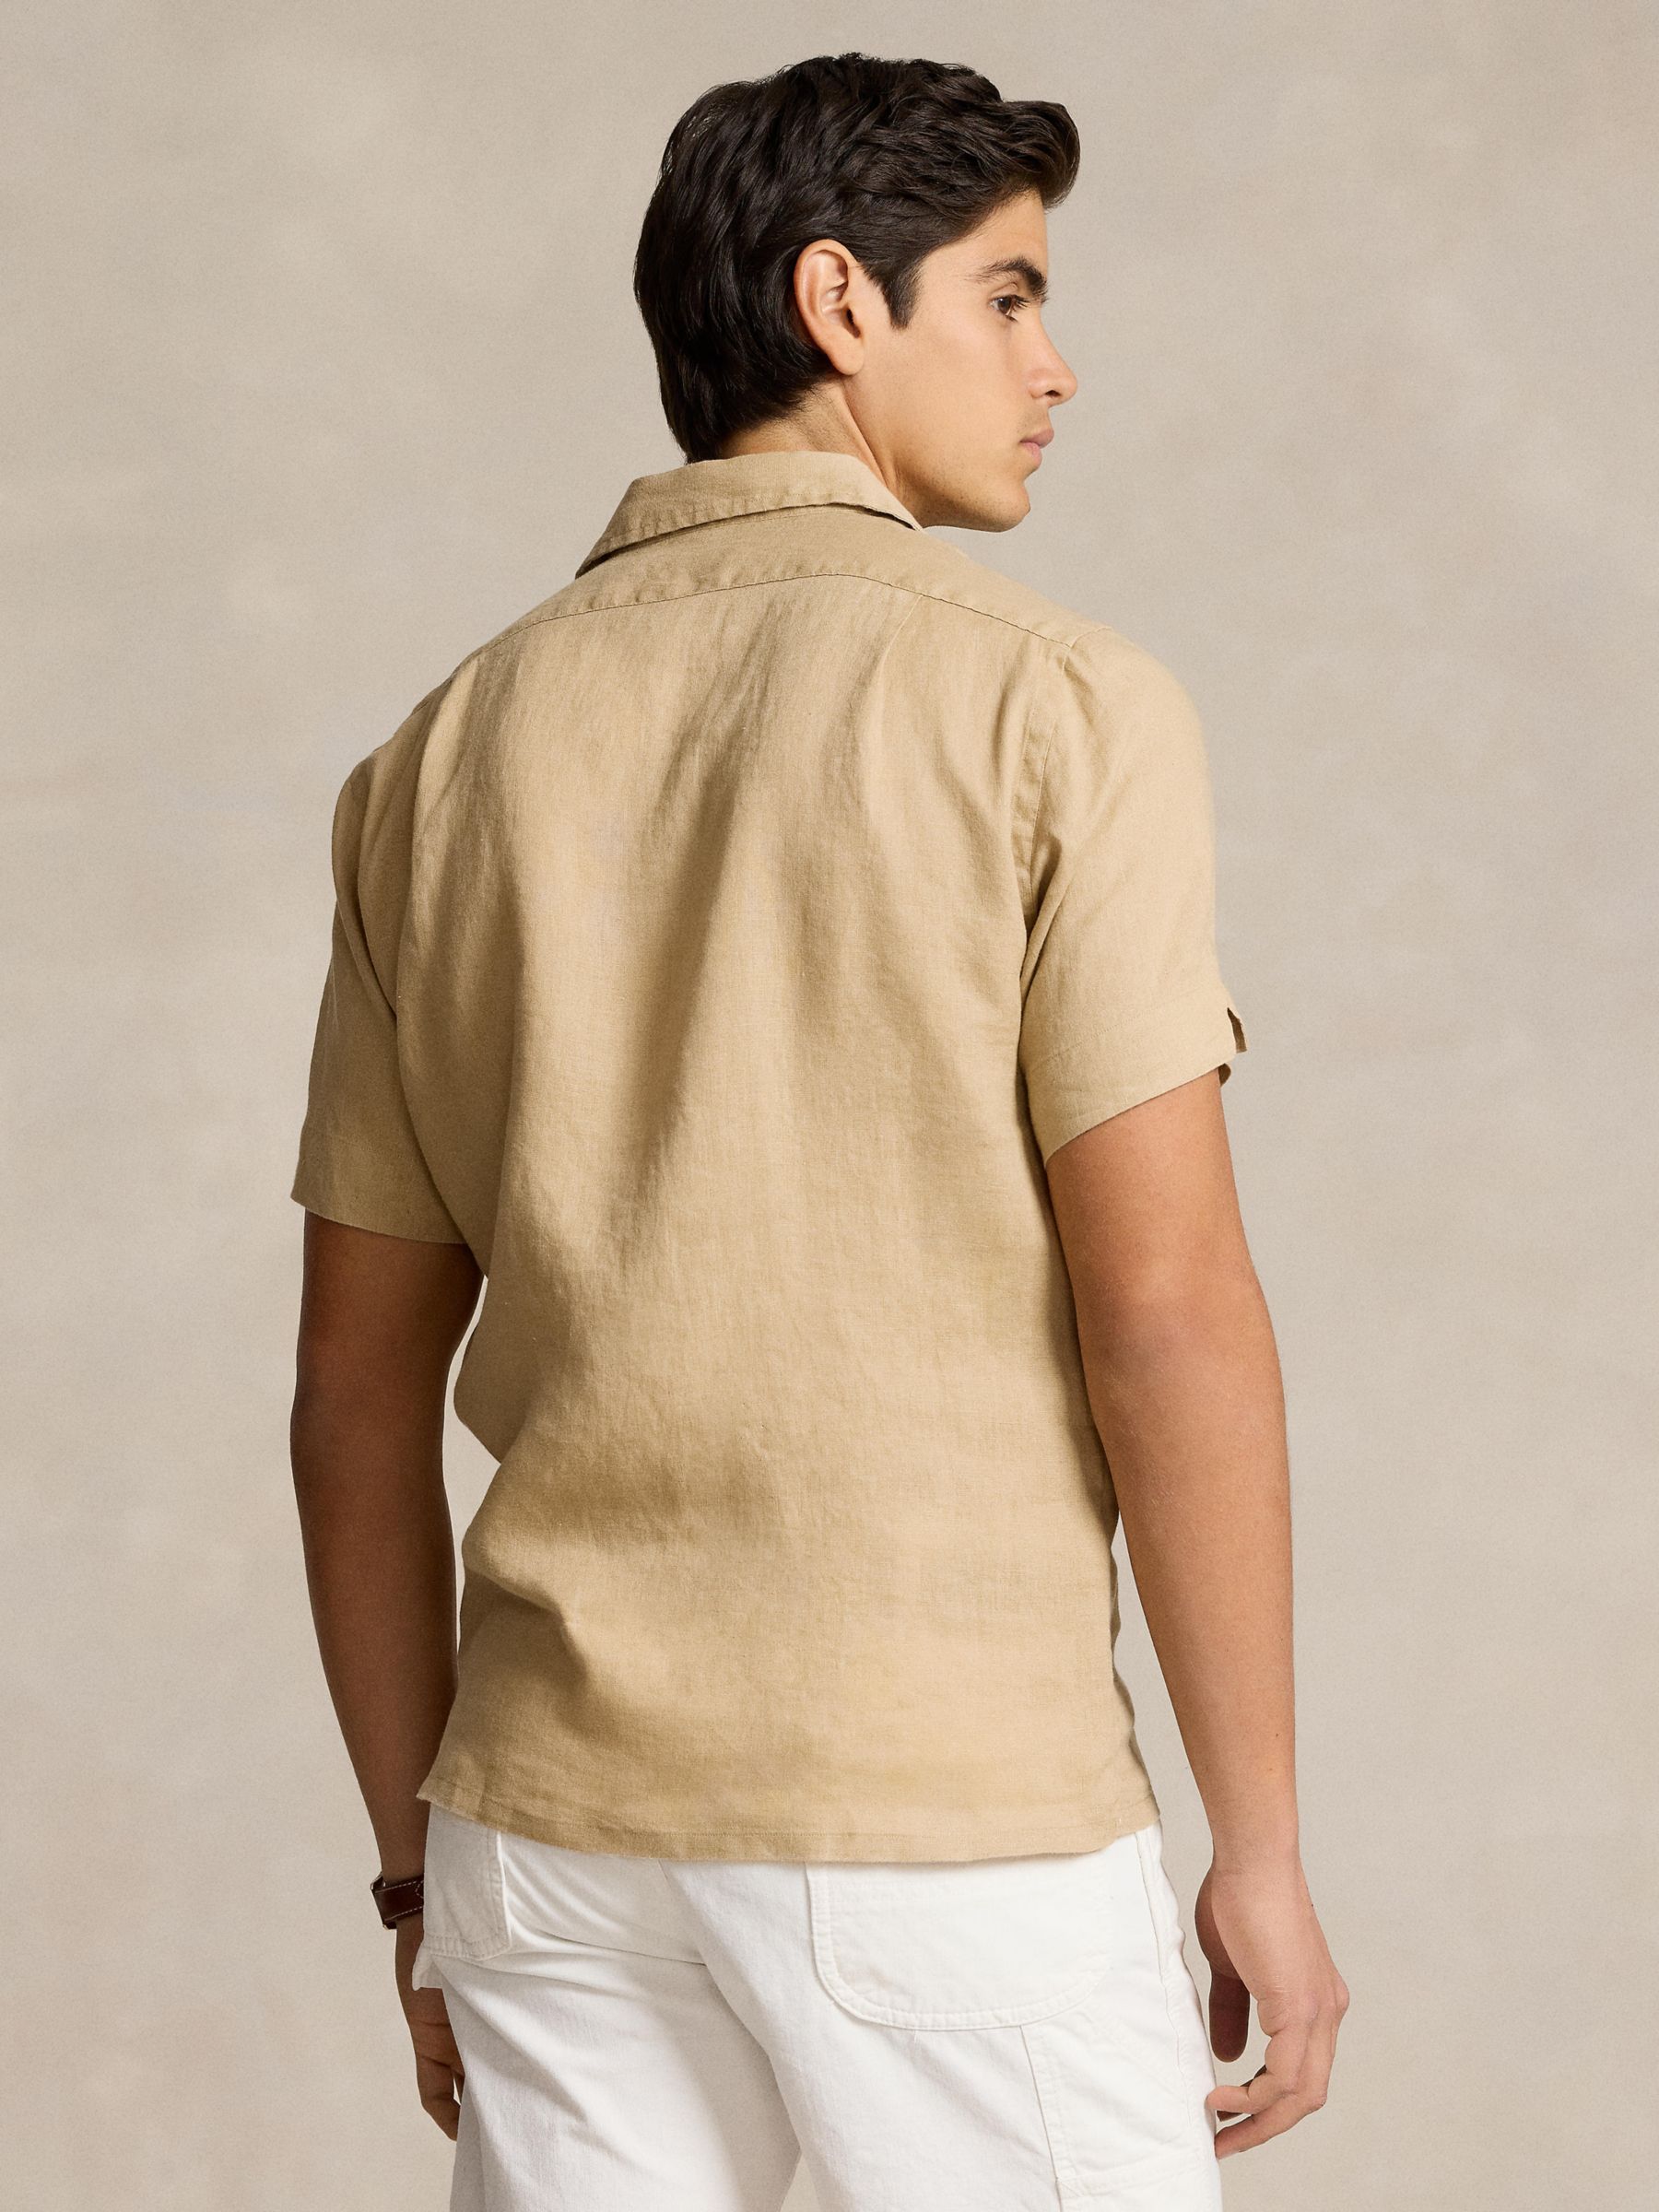 Buy Polo Ralph Lauren Linen Shirt Online at johnlewis.com